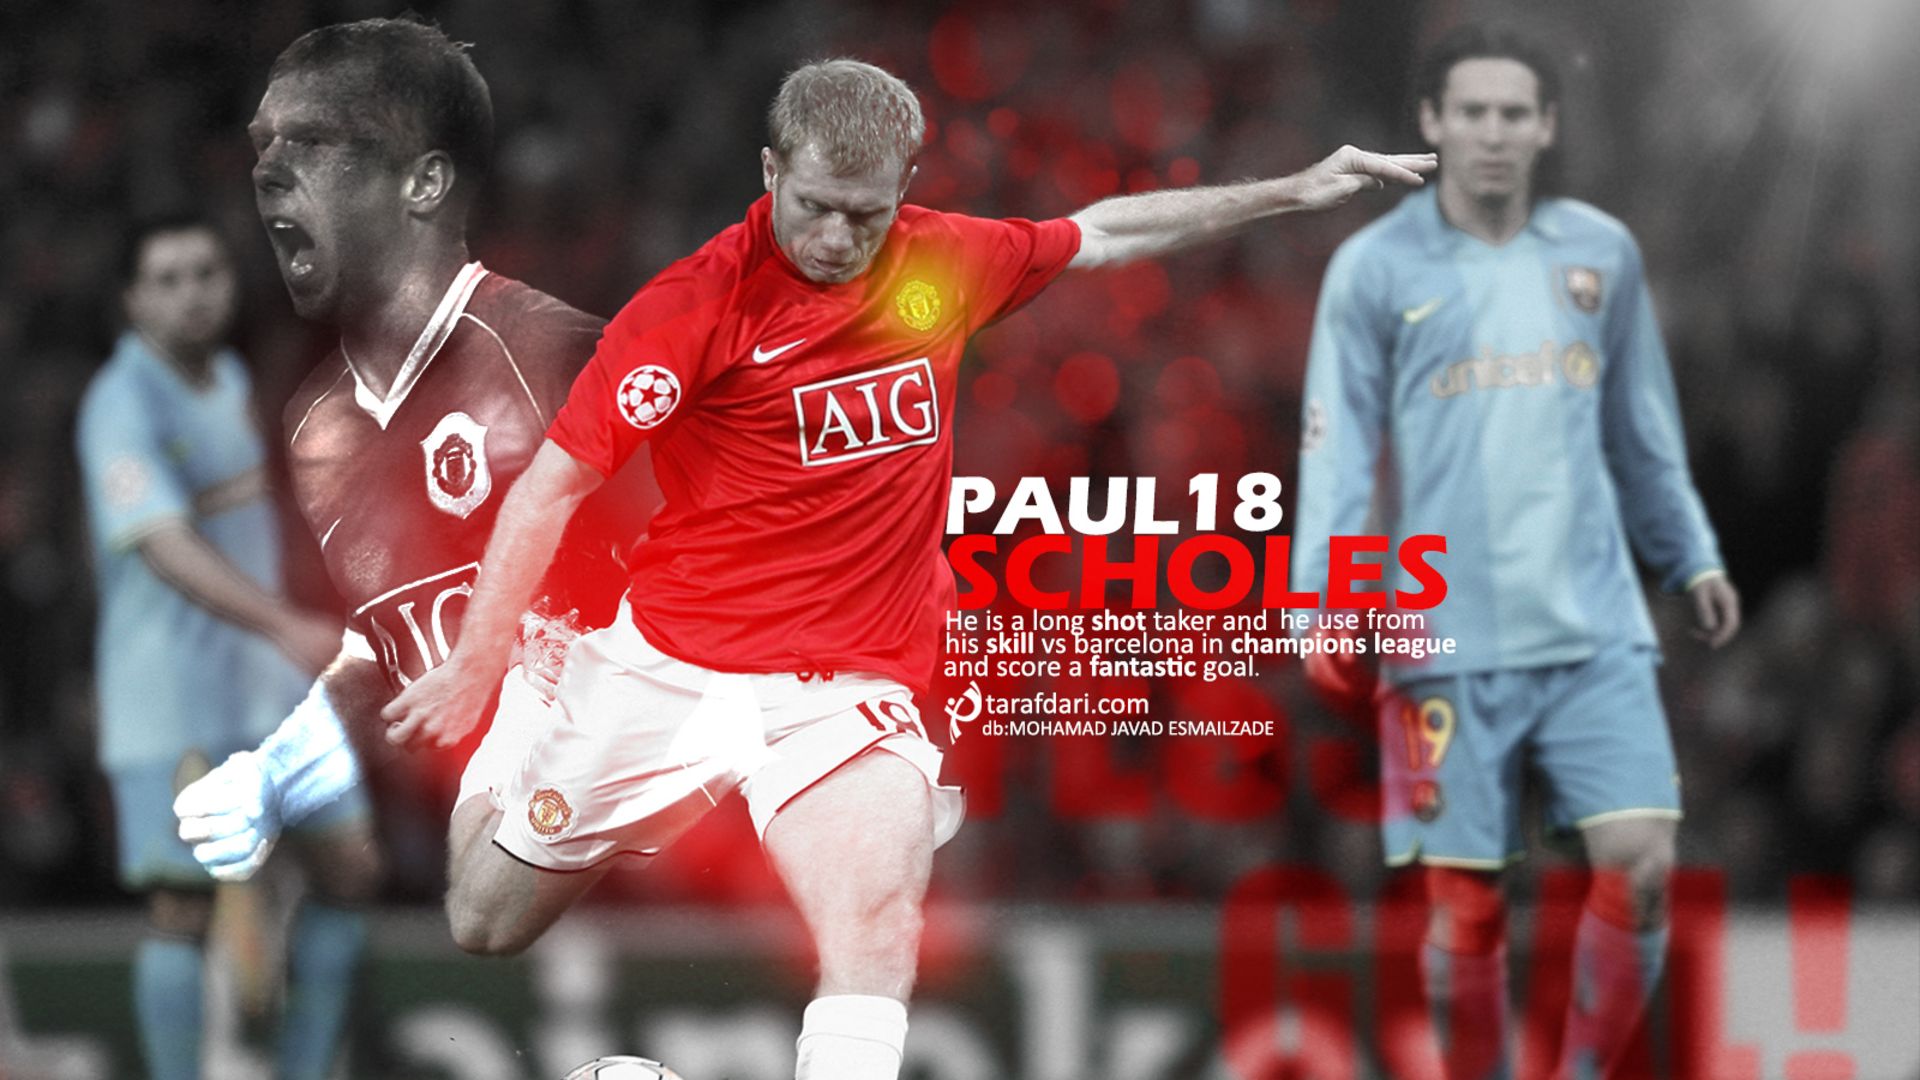 Descarga gratuita de fondo de pantalla para móvil de Fútbol, Deporte, Manchester United F C, Pablo Scholes.